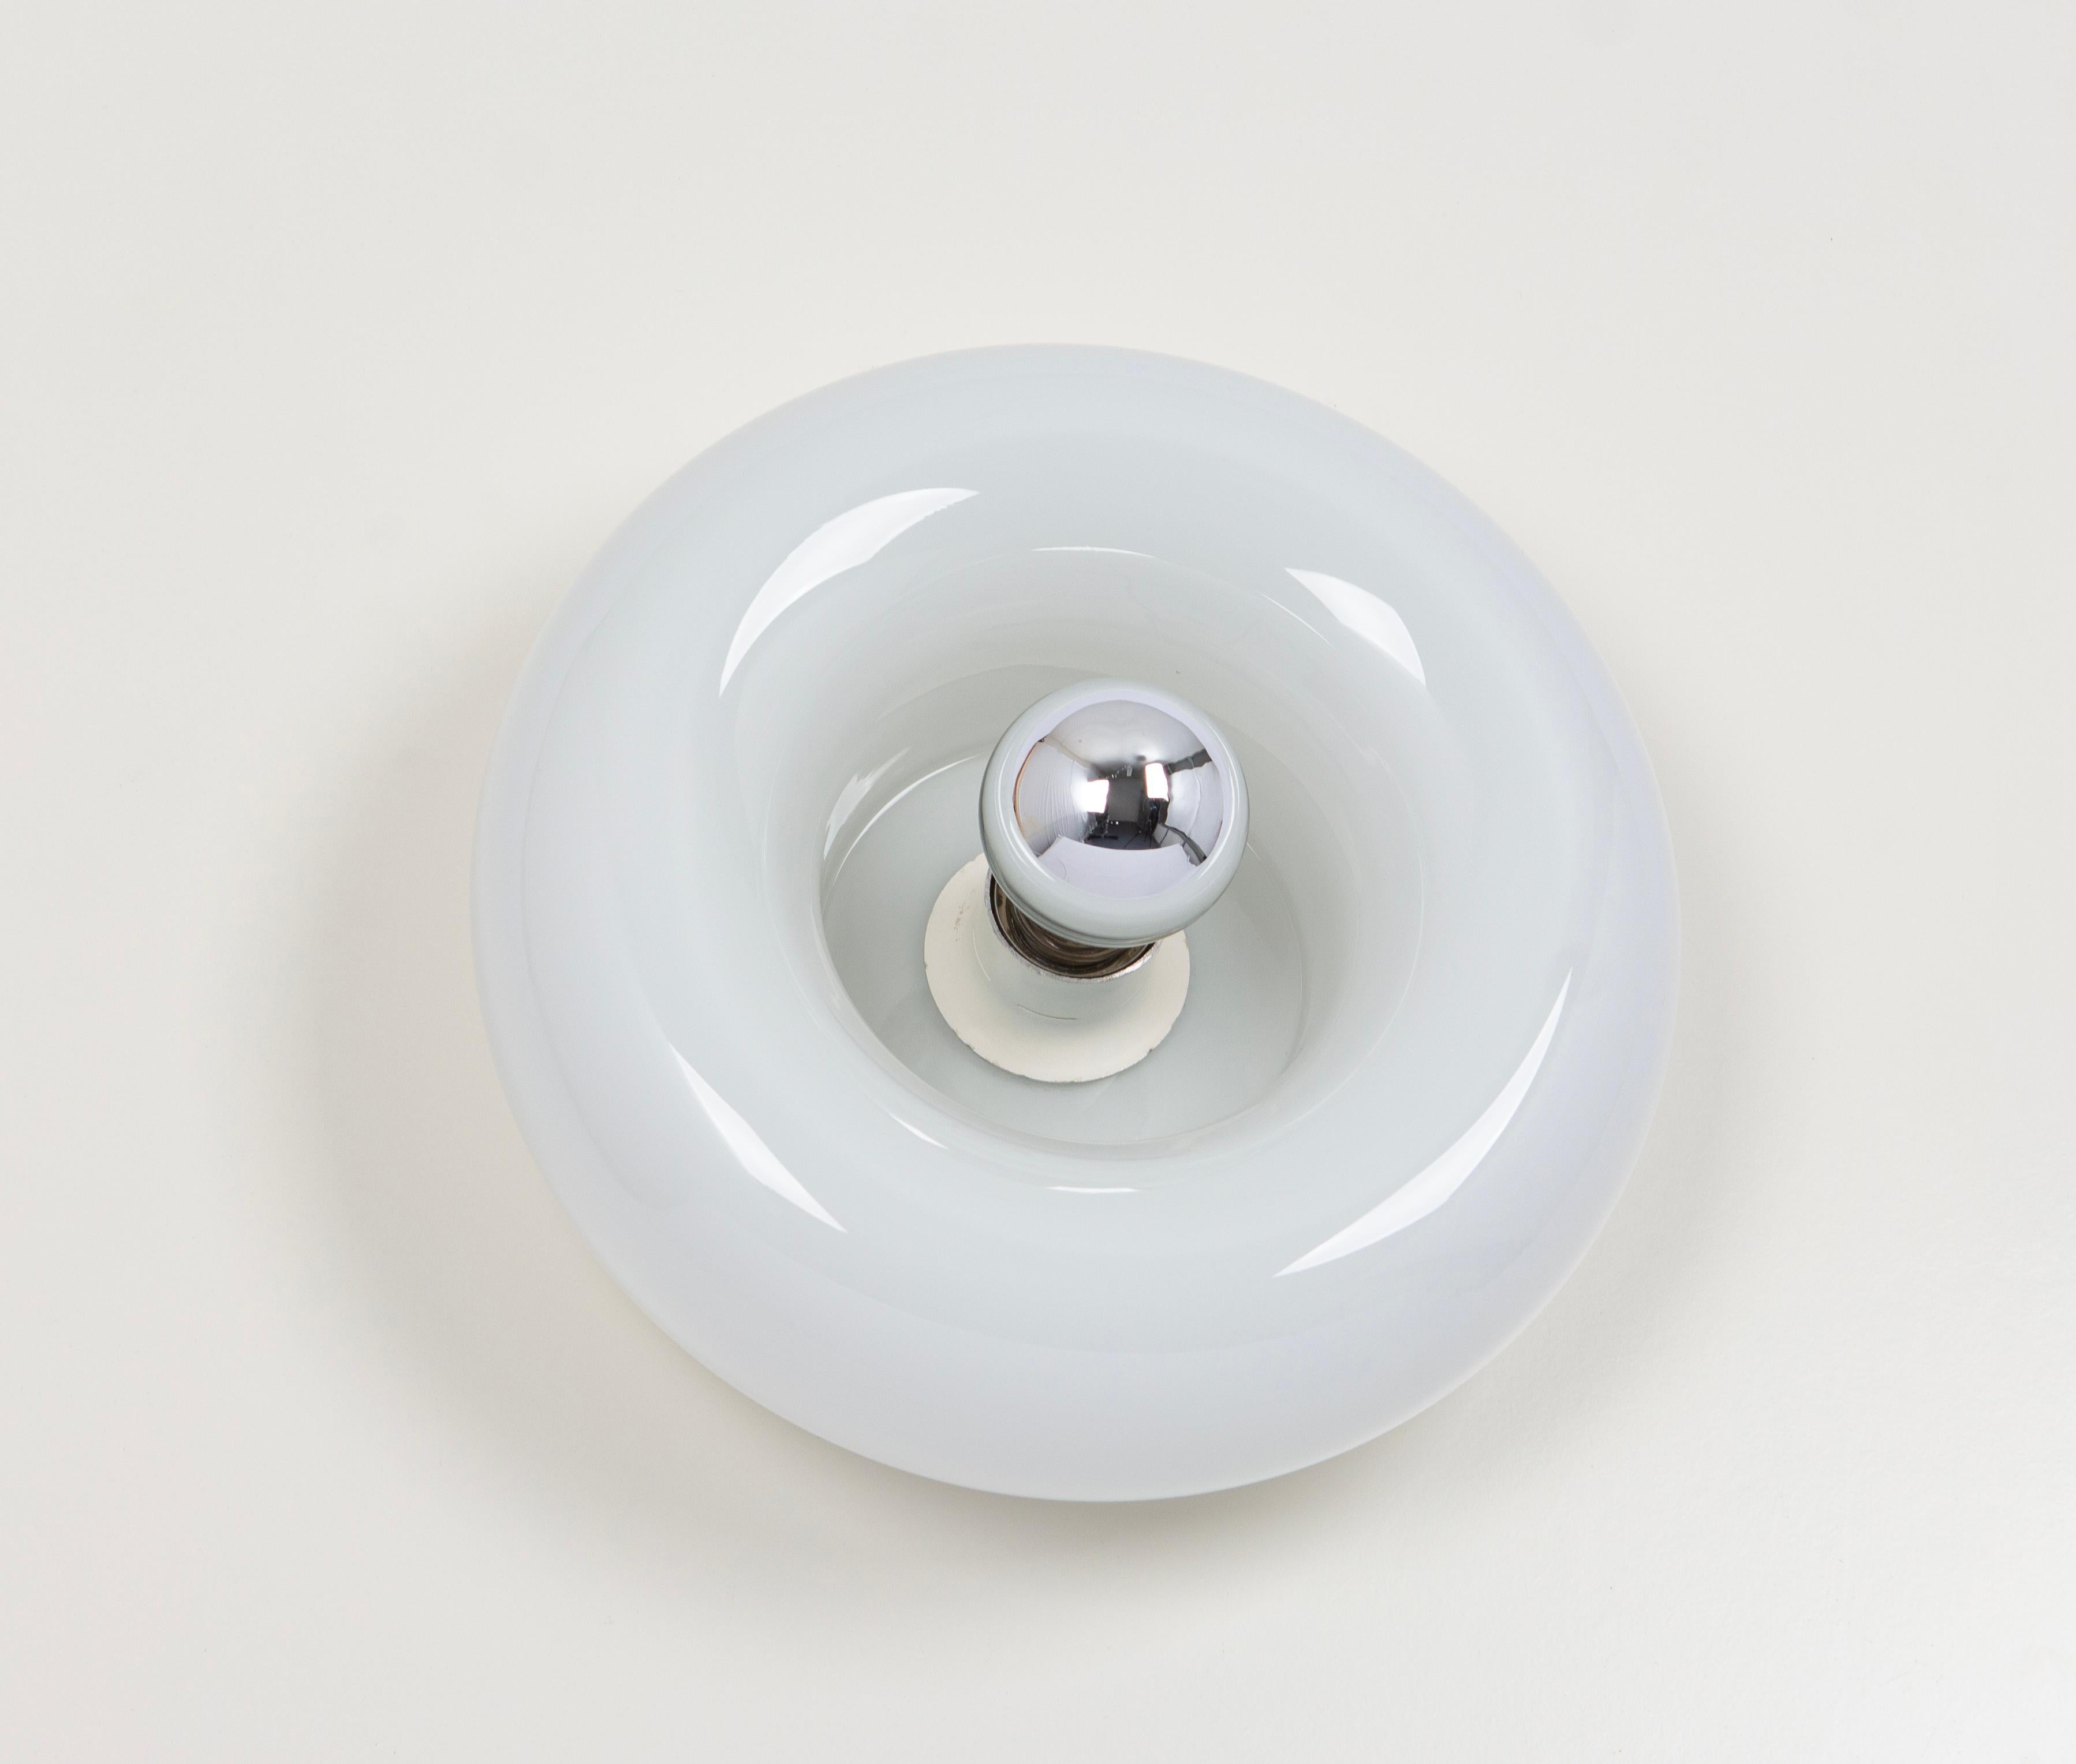 1 von 2 besonderen runden biomorphen Opal Murano Glas Wandleuchte in Doughnut Form entworfen Doria Leuchten, Deutschland, hergestellt, ca. 1960-1969.
Hohe Qualität, guter Zustand.
Sehr schöner Lichteffekt.
Gereinigt, gut verkabelt und